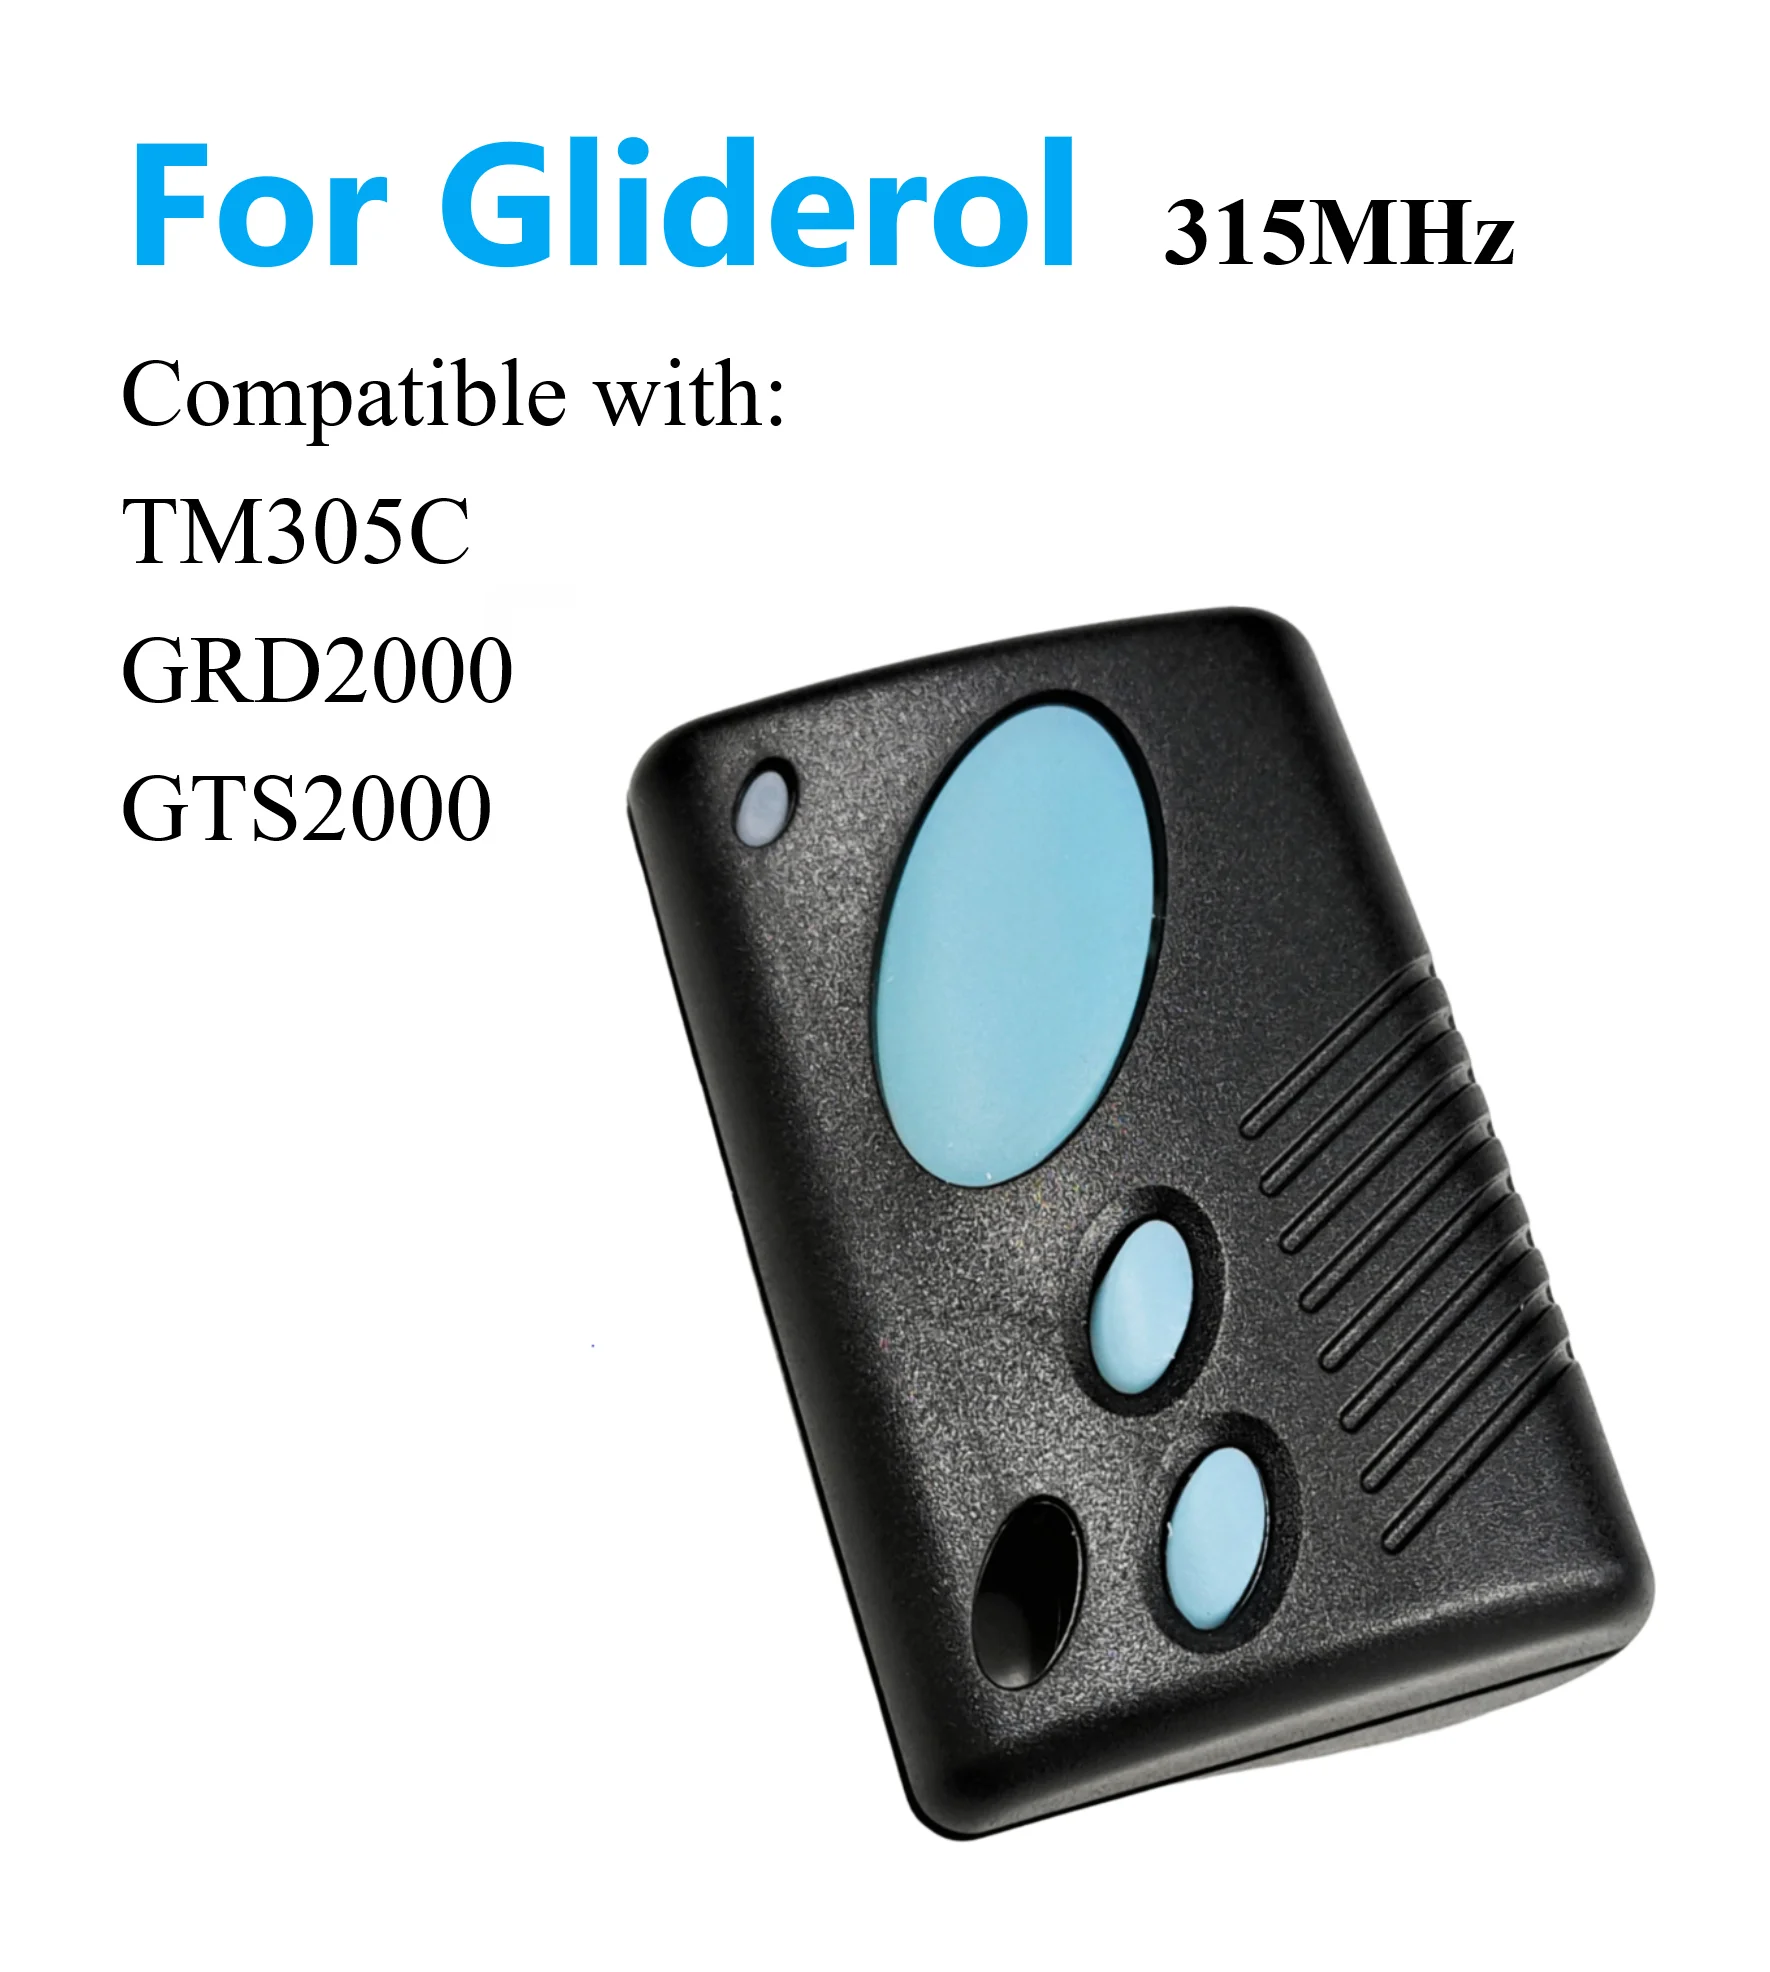 Пульт дистанционного управления для гаражных дверей Gliderol TM305C GRD2000 GTS2000 Rollamatic 315MHZ remote for gliderol tm305c grd2000 gts2000 315mhz garage door remote control